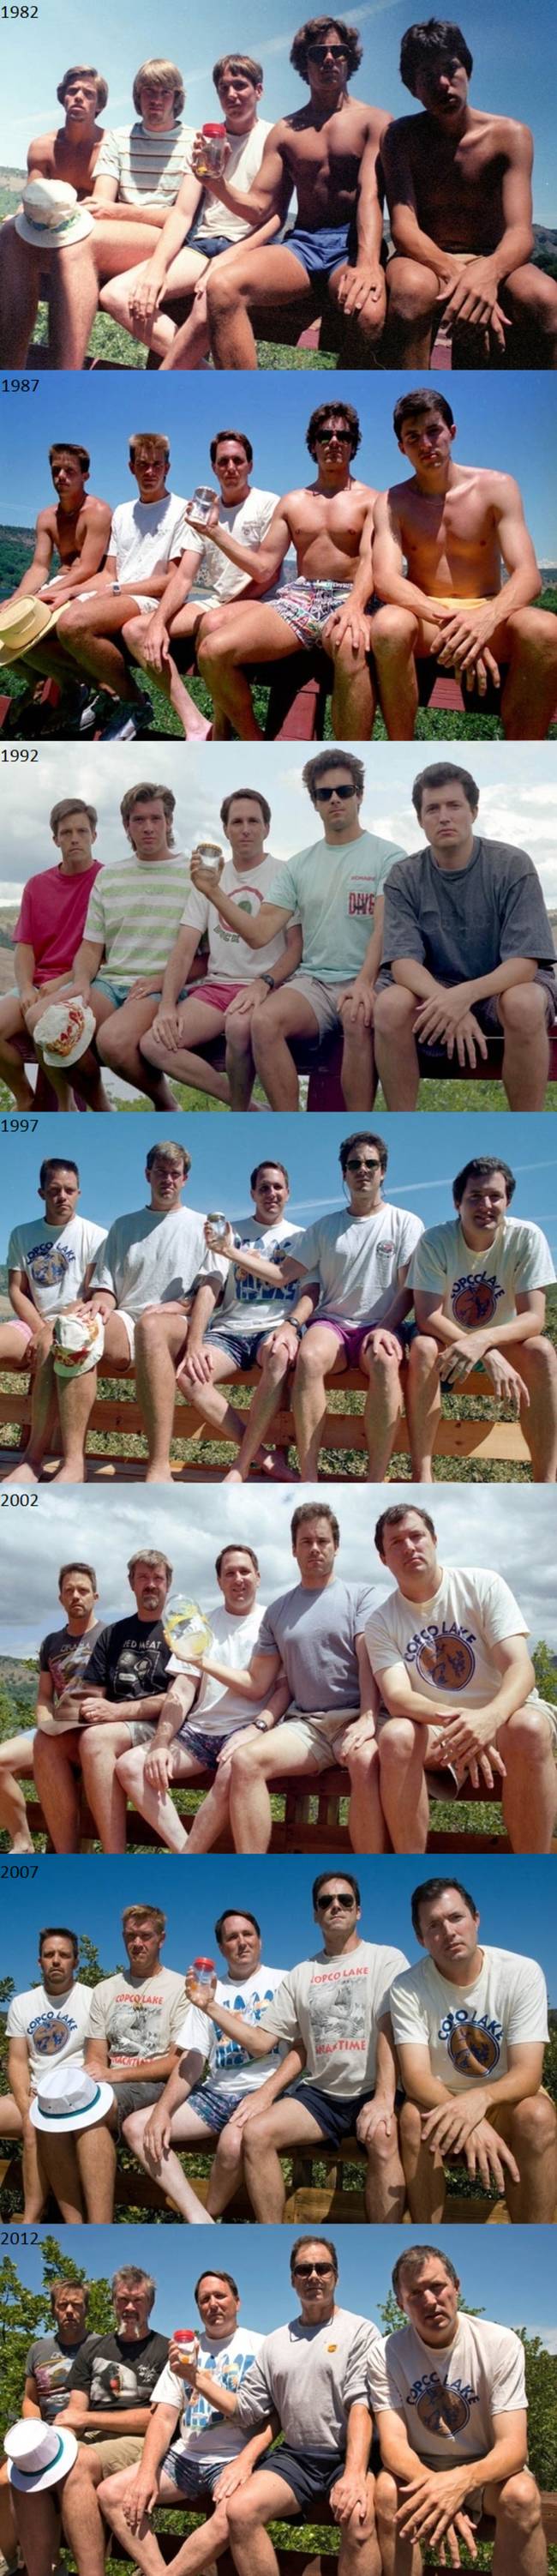 這群男生每5年就拍一次相似的照片，持續了30年！